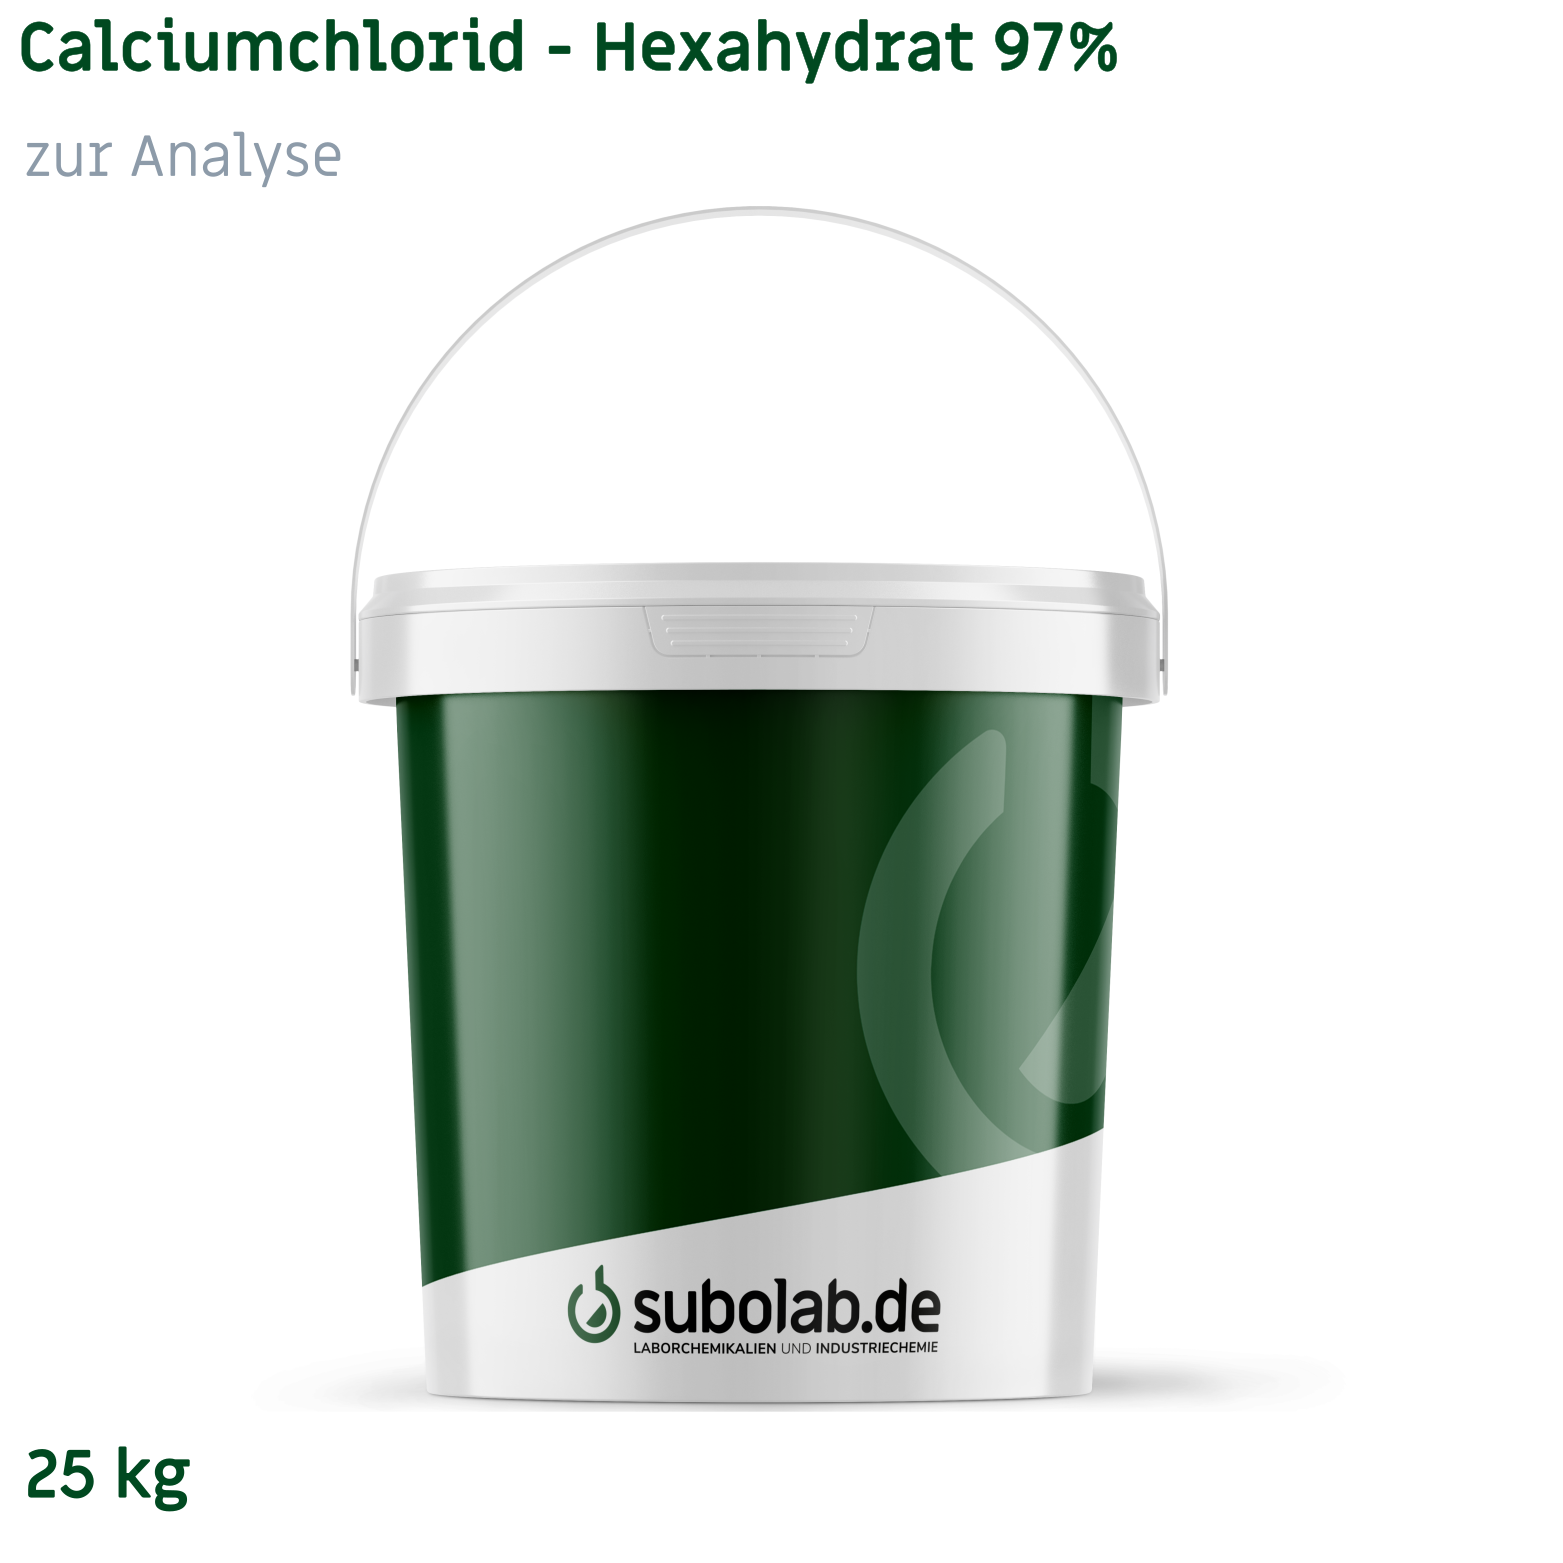 Bild von Calciumchlorid - Hexahydrat 97% zur Analyse (25 kg)